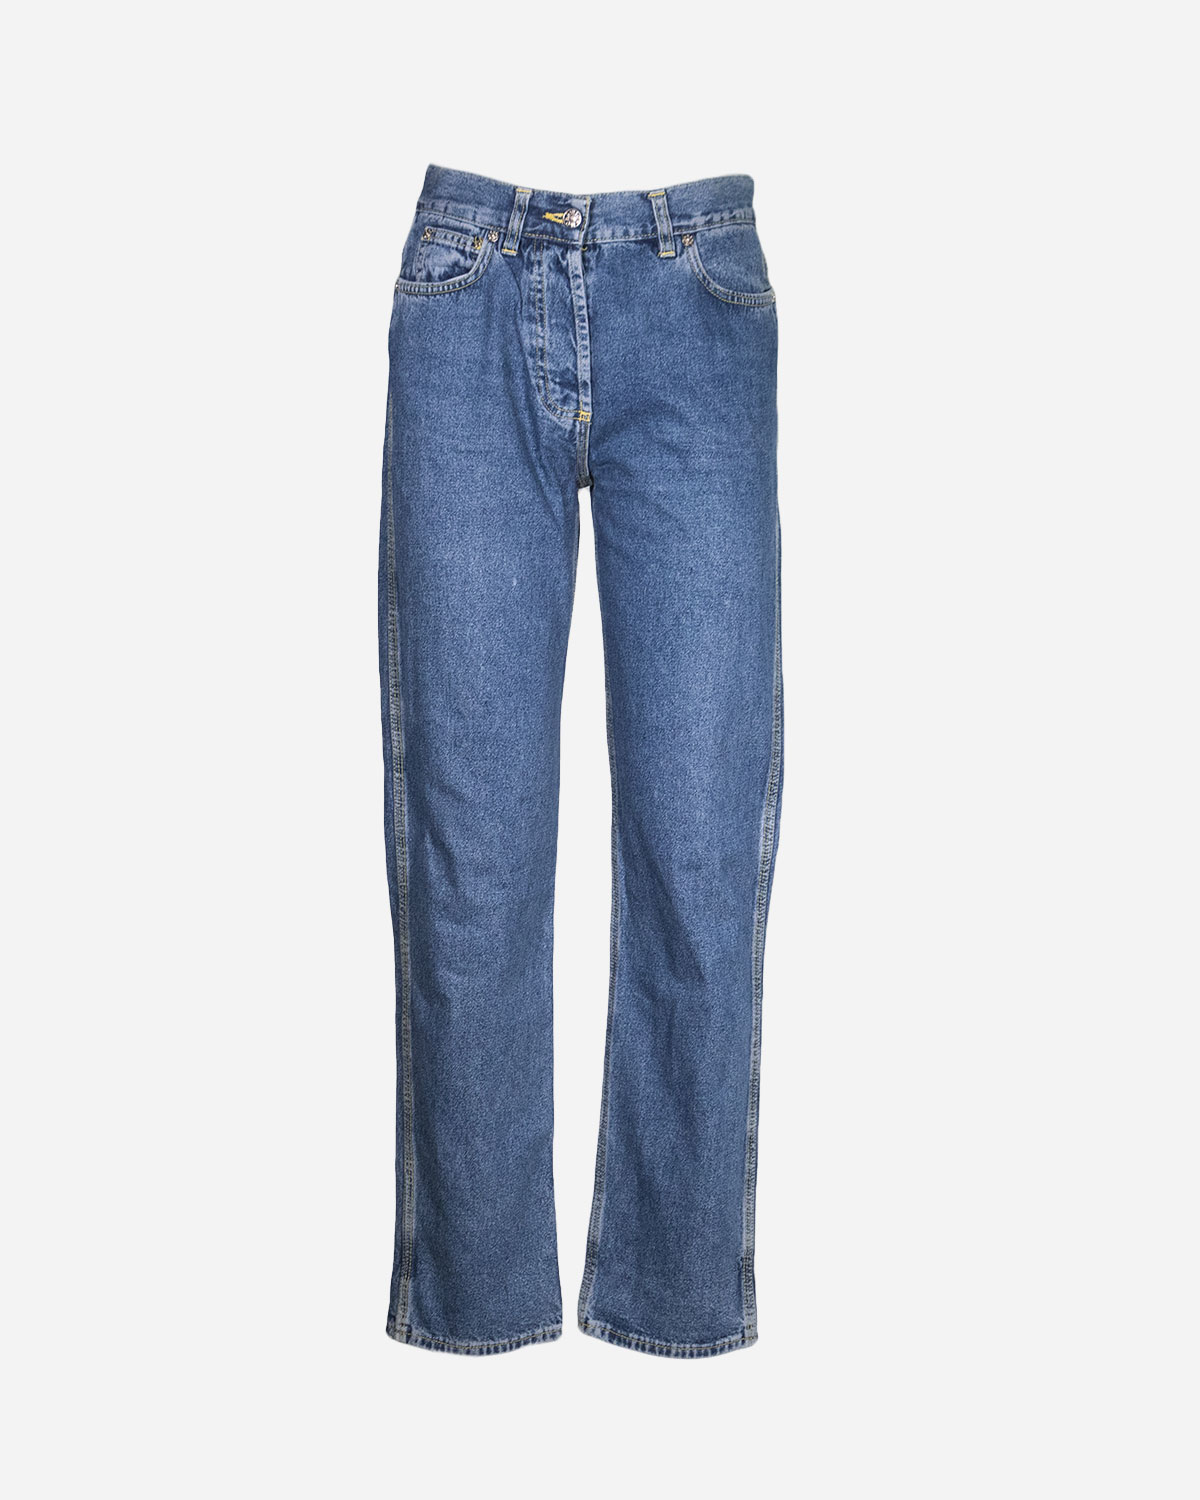 Box quattro pantaloni jeans firmato top